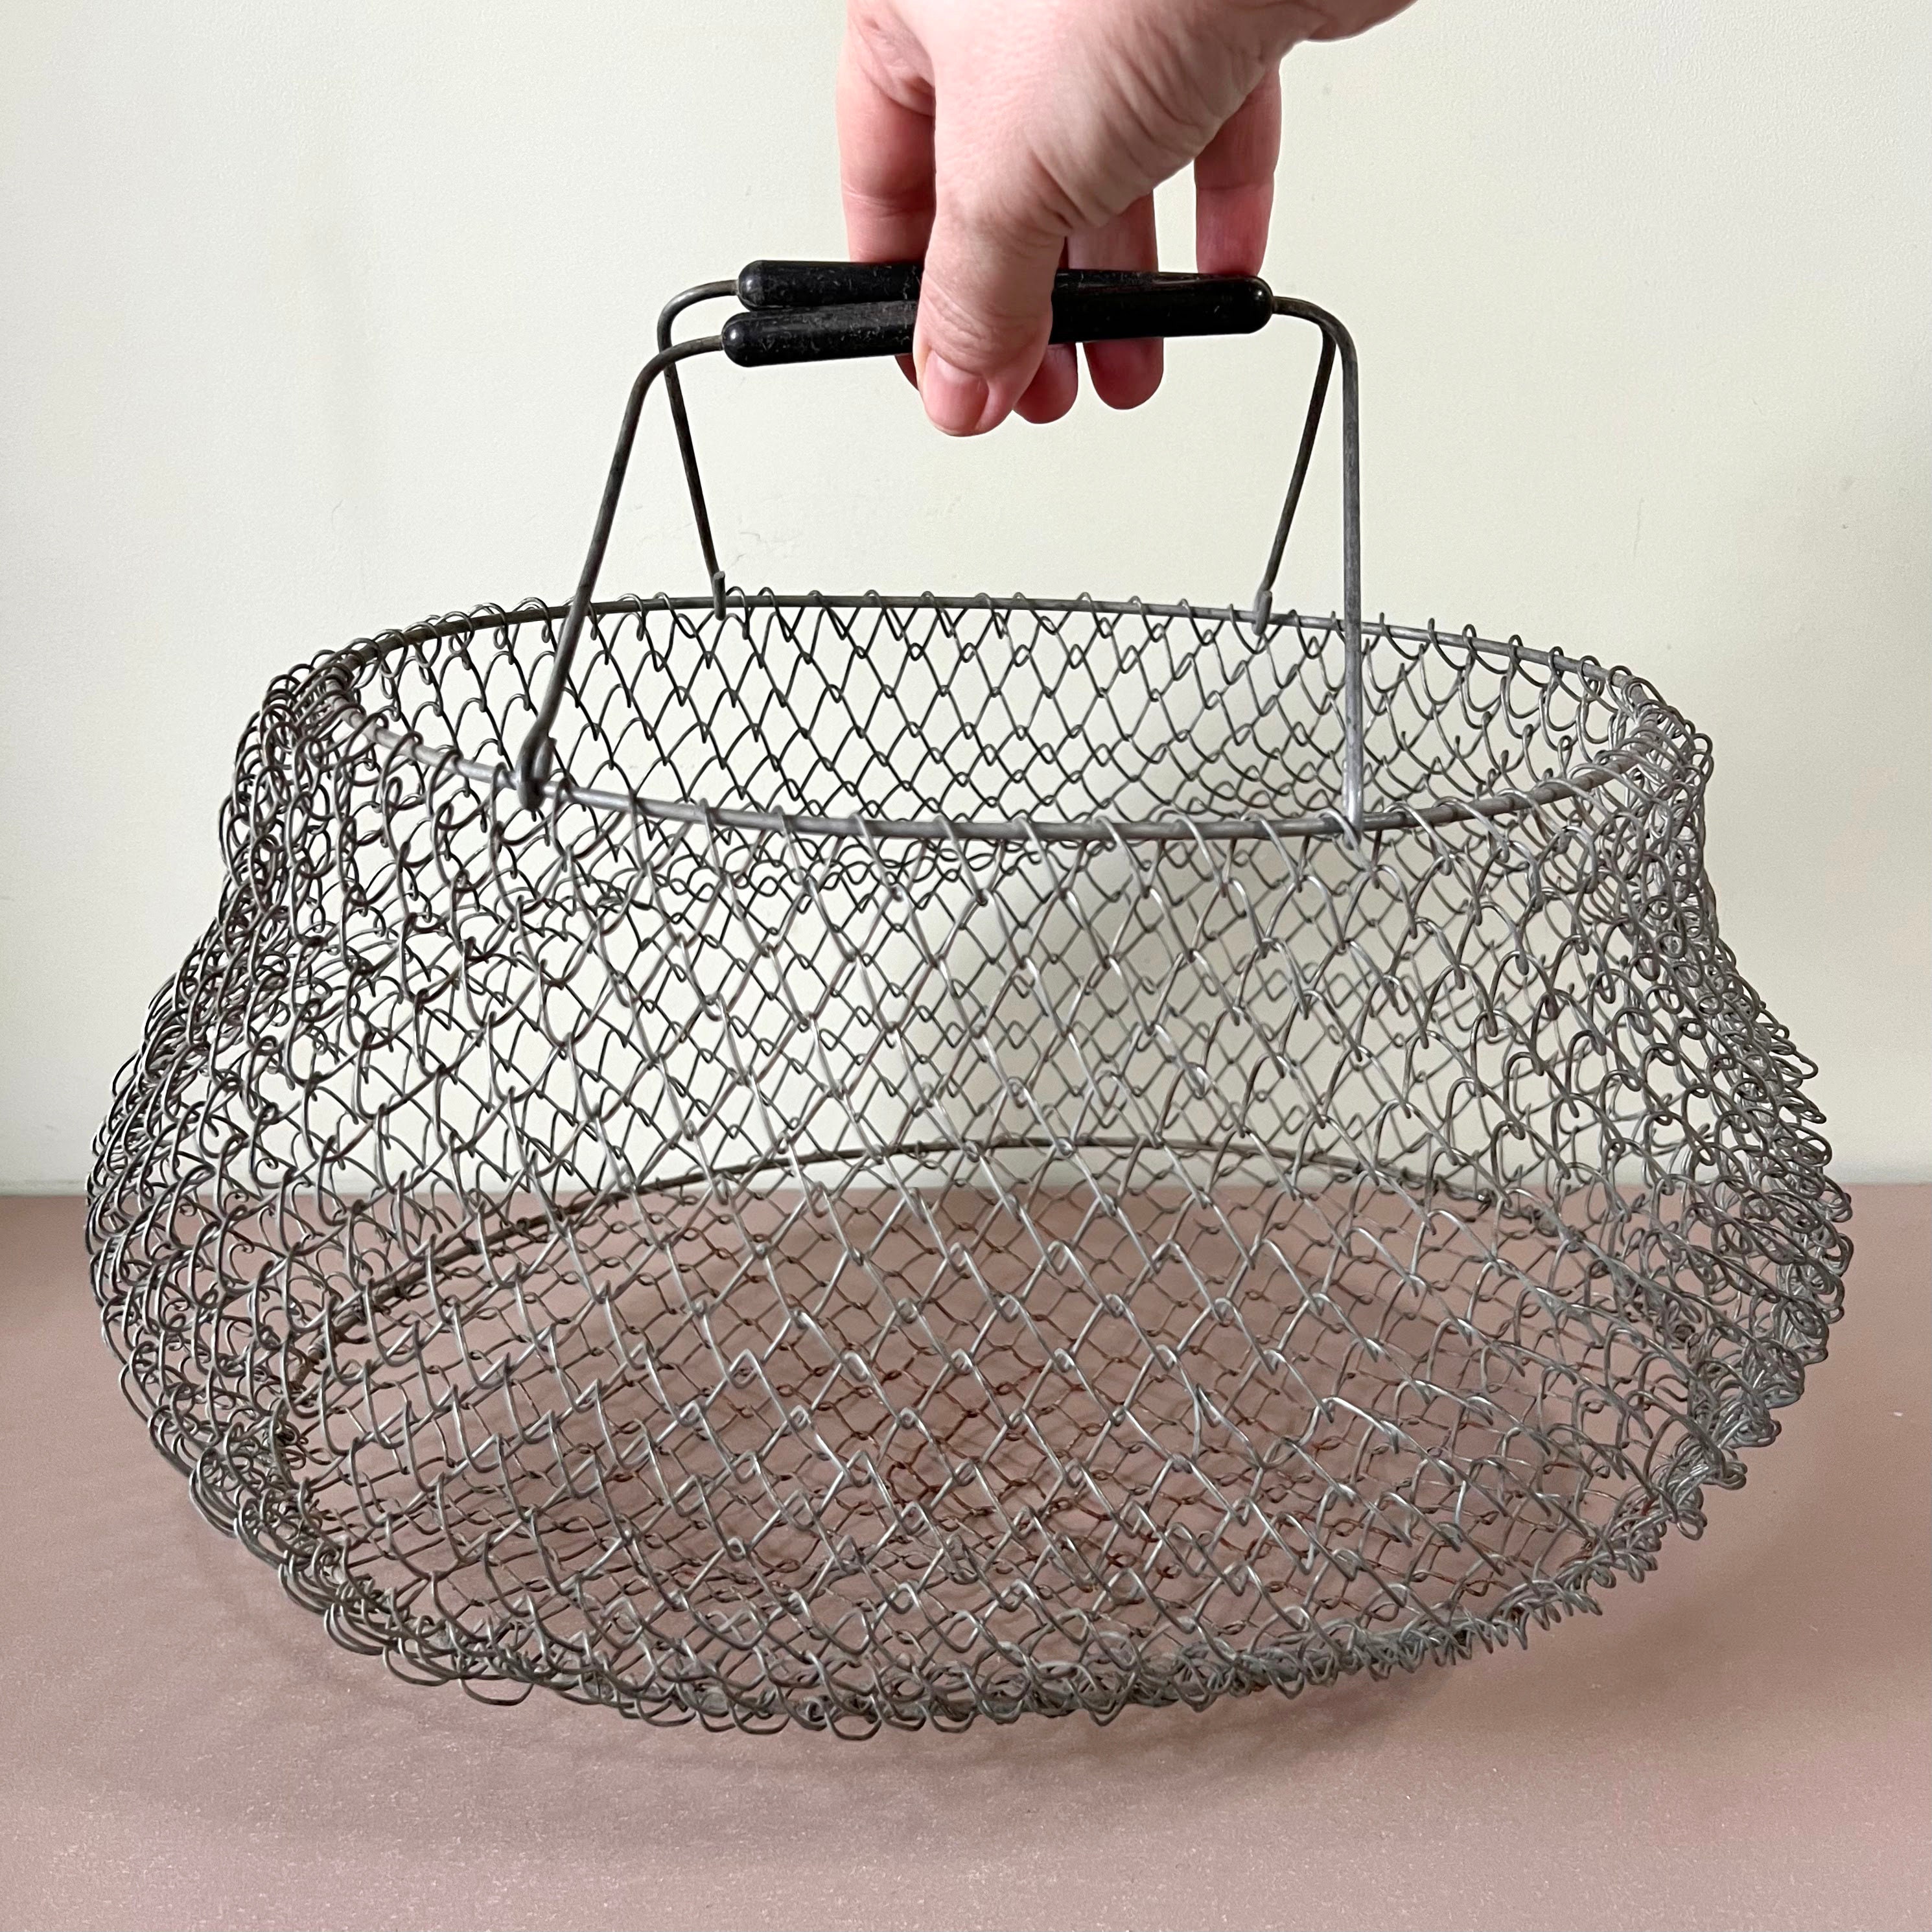 Mesh Fish Basket 